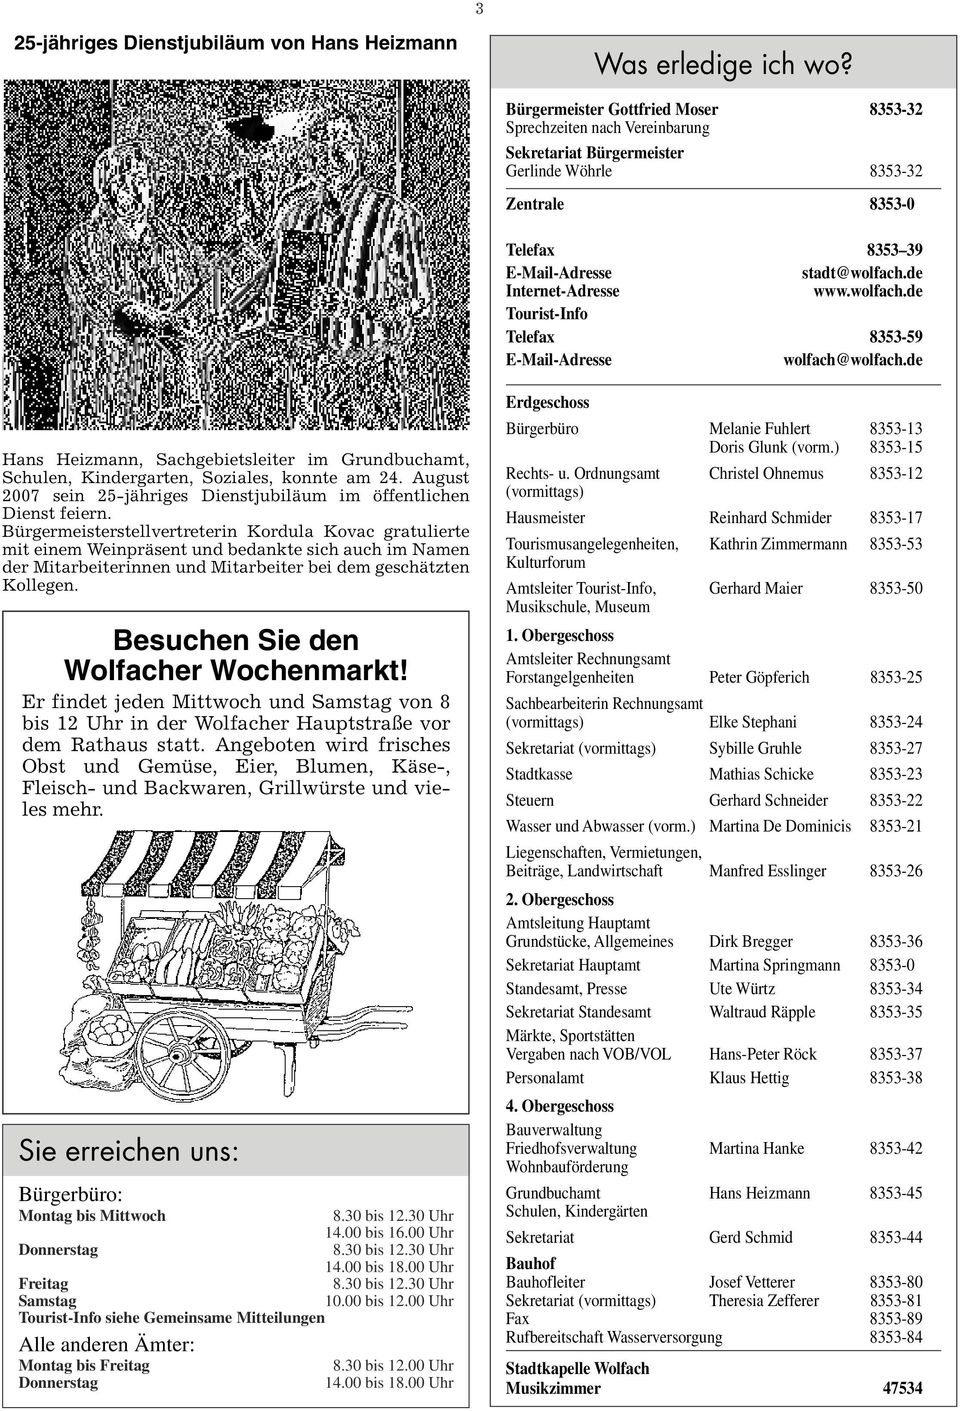 de Internet-Adresse www.wolfach.de Tourist-Info Telefax 8353-59 E-Mail-Adresse wolfach@wolfach.de Hans Heizmann, Sachgebietsleiter im Grundbuchamt, Schulen, Kindergarten, Soziales, konnte am 24.